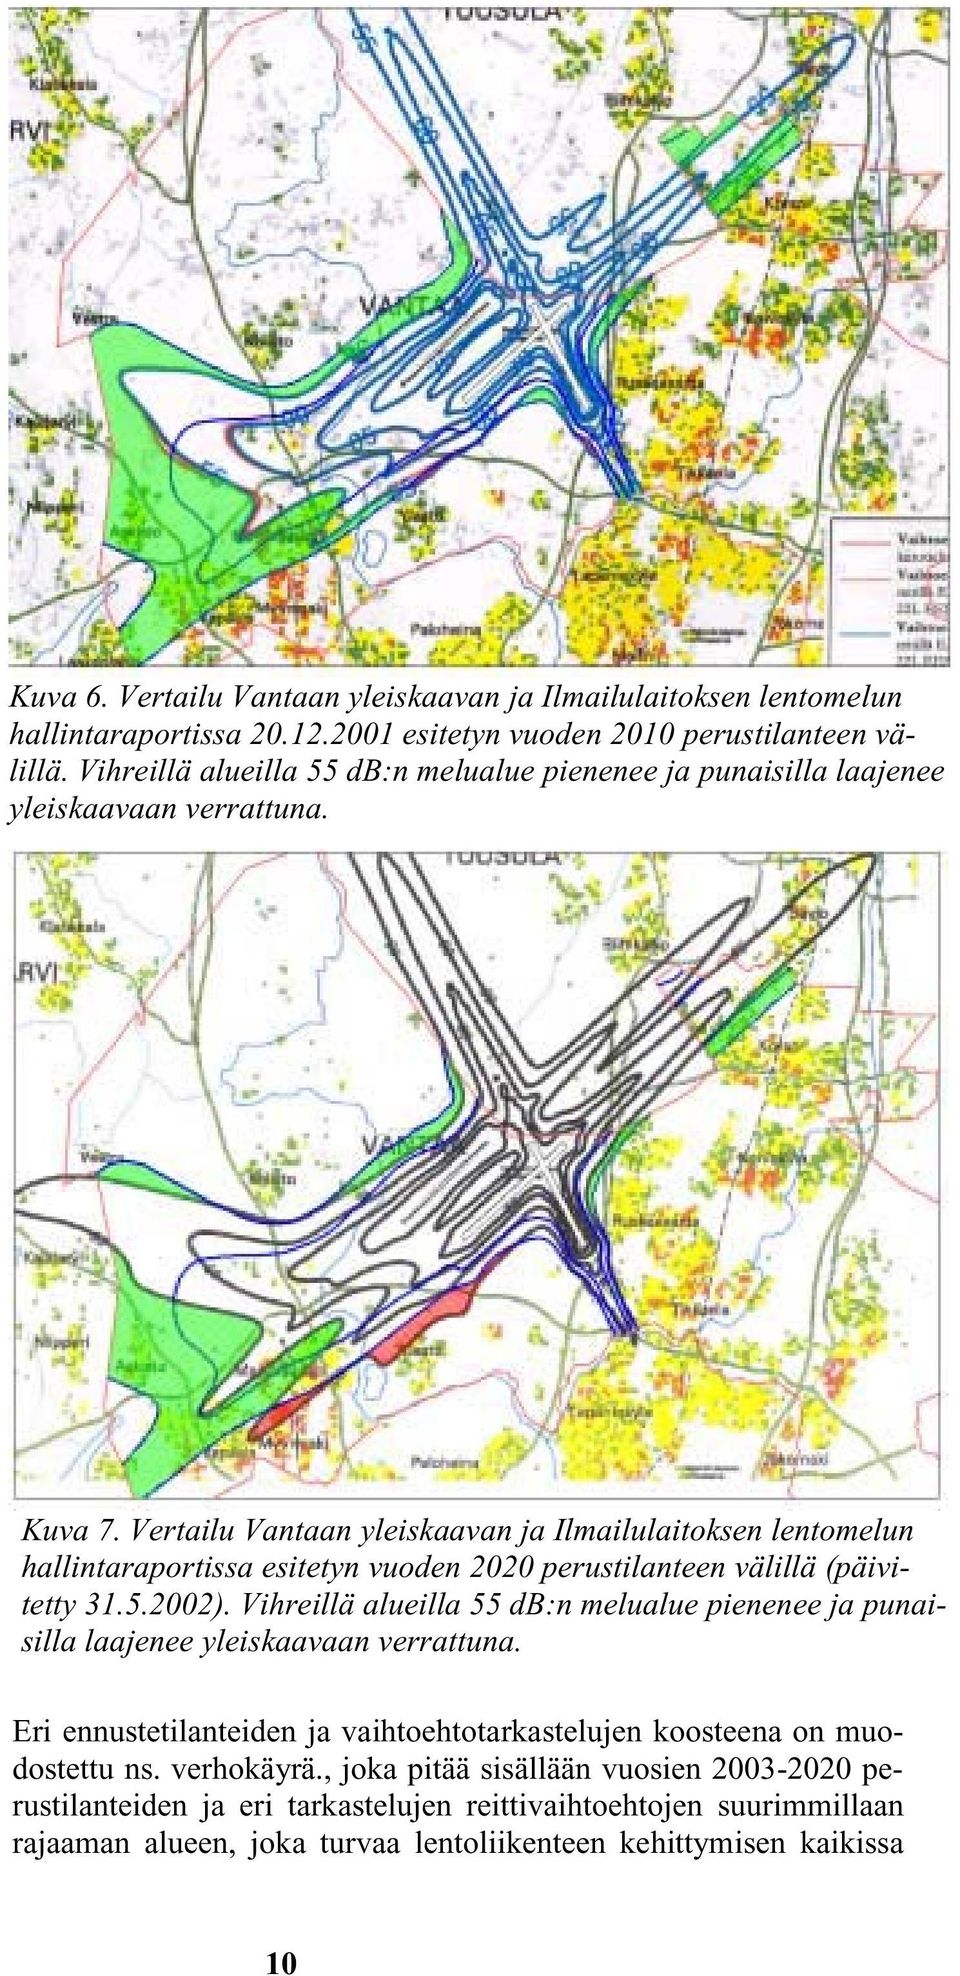 Vertailu Vantaan yleiskaavan ja Ilmailulaitoksen lentomelun hallintaraportissa esitetyn vuoden 2020 perustilanteen välillä (päivitetty 31.5.2002).